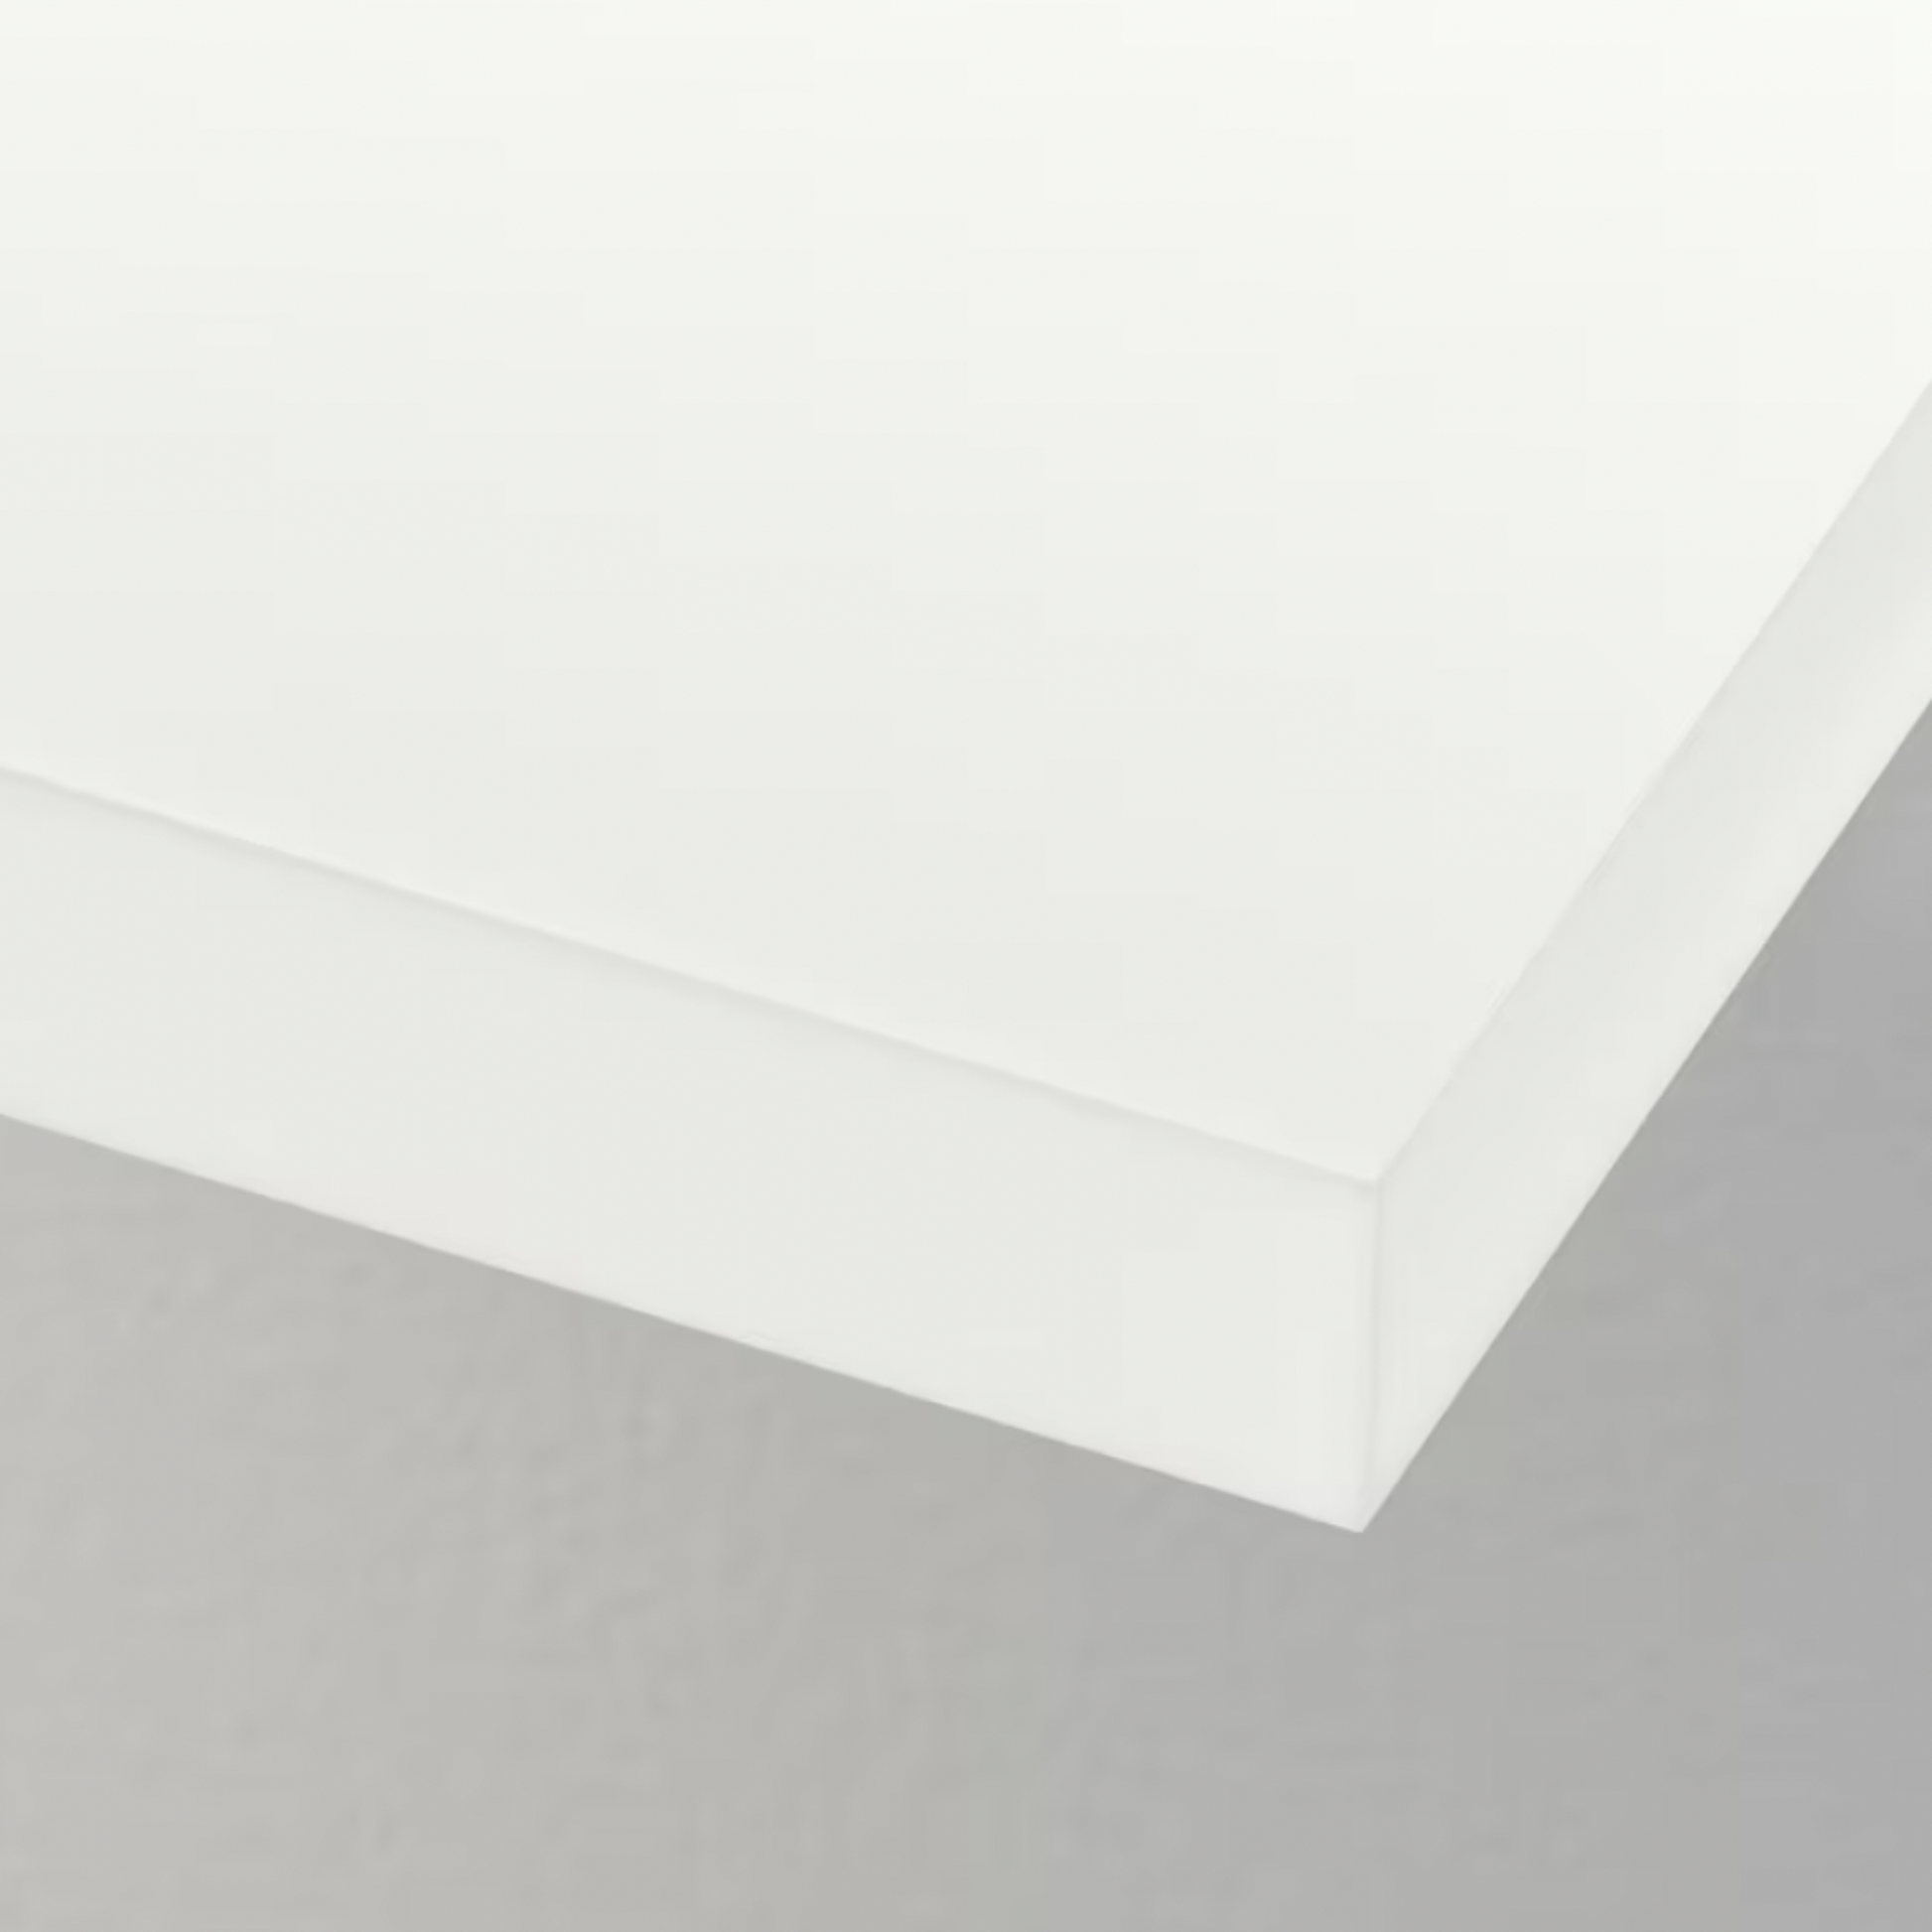 IKEA Lack Floating Shelf 110x26cm, White (4380999319617)